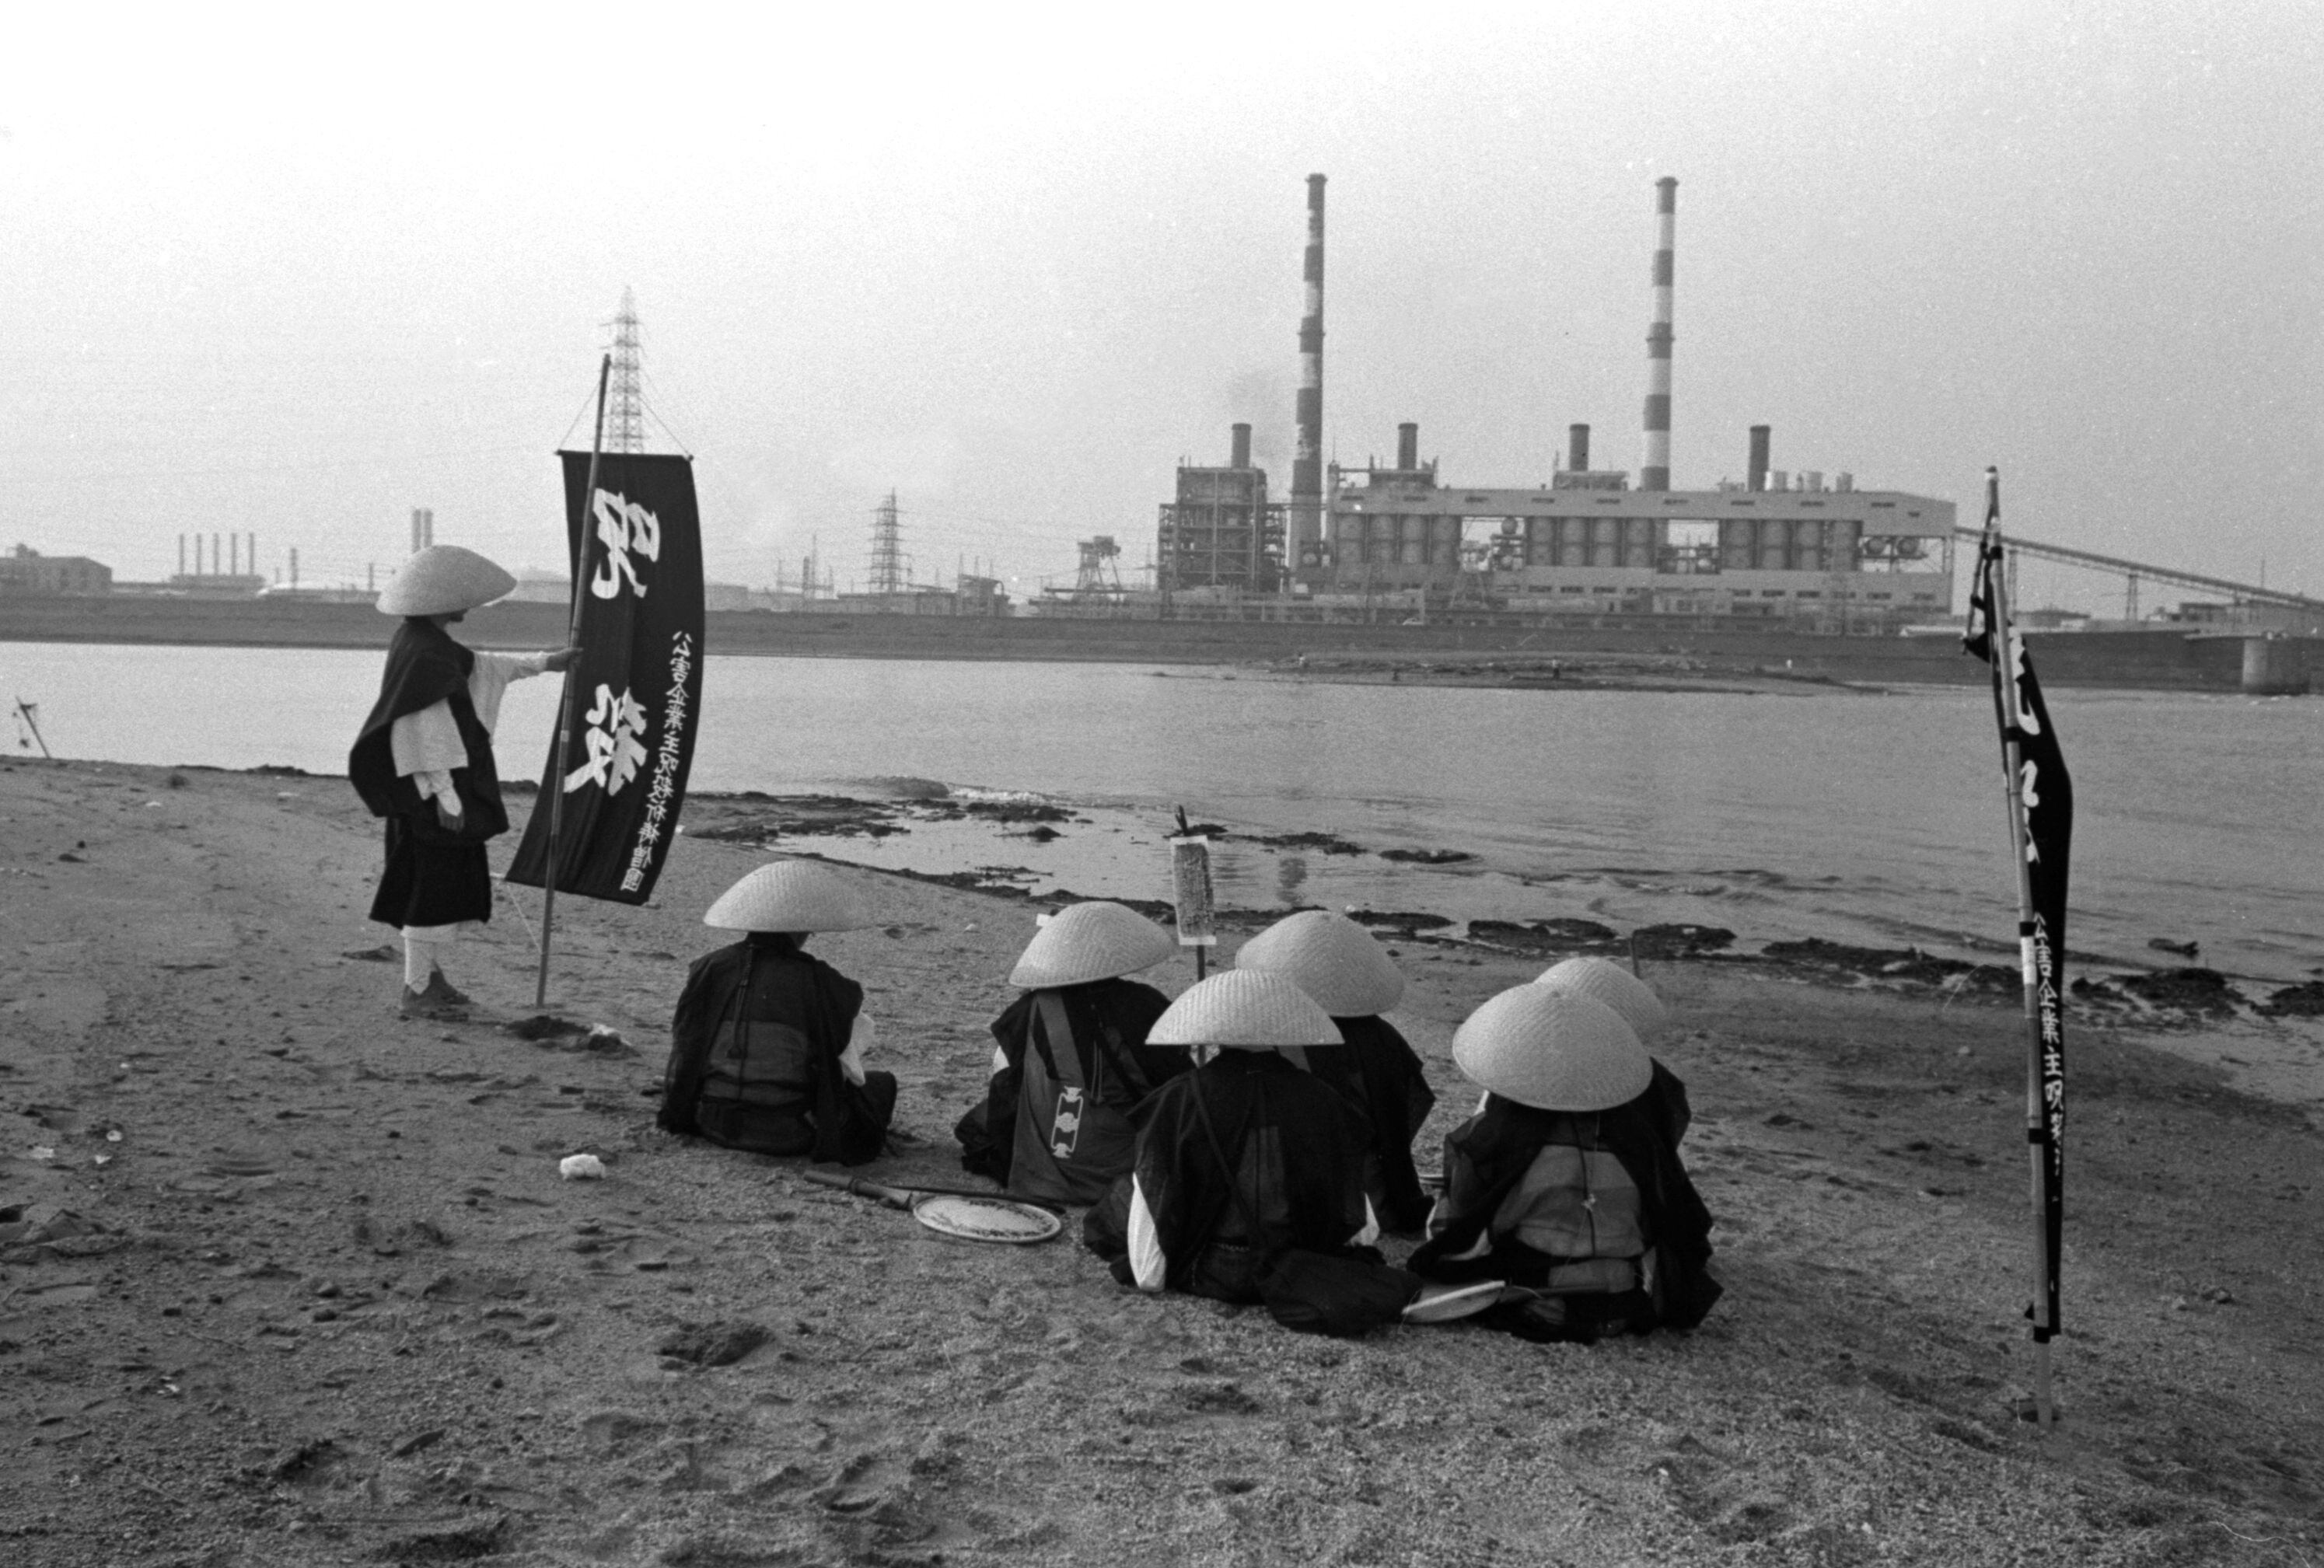 Imagen perteneciente a la serie  'Collective of Monks Praying to Kill Owners of Corporation Responsible for Environmental Pollutions' (Colectivo de monjes que rezan para matar a los propietarios de las corporaciones responsables de la contaminación ambiental), 1970.